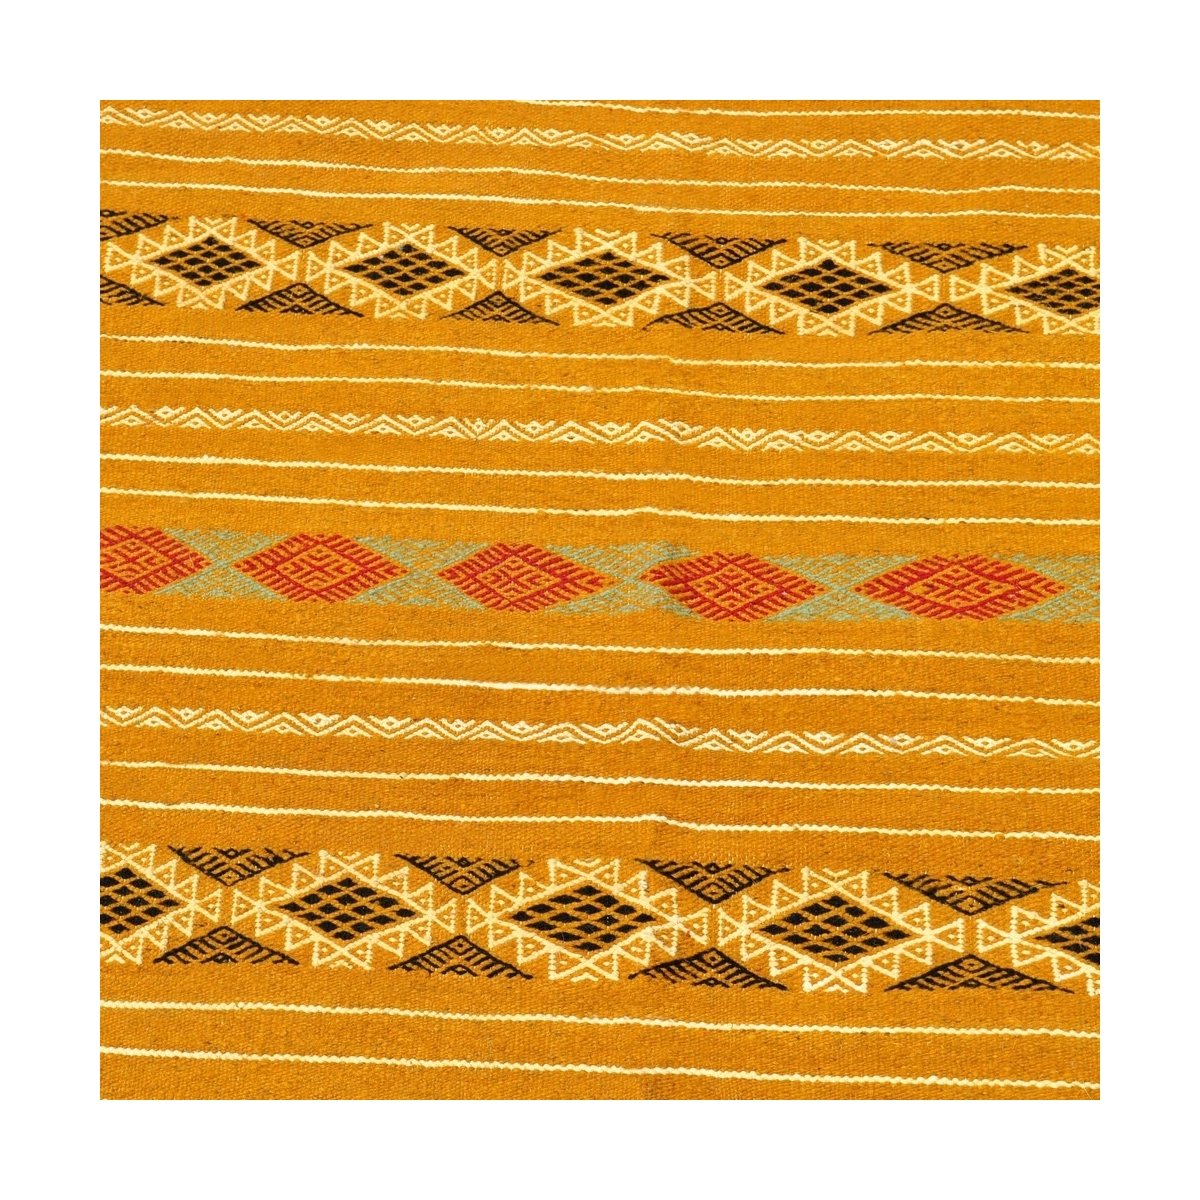 Berber Teppich Teppich Kelim Fahs 100x150 Gelb/Weiss (Handgewebt, Wolle) Tunesischer Kelim-Teppich im marokkanischen Stil. Recht